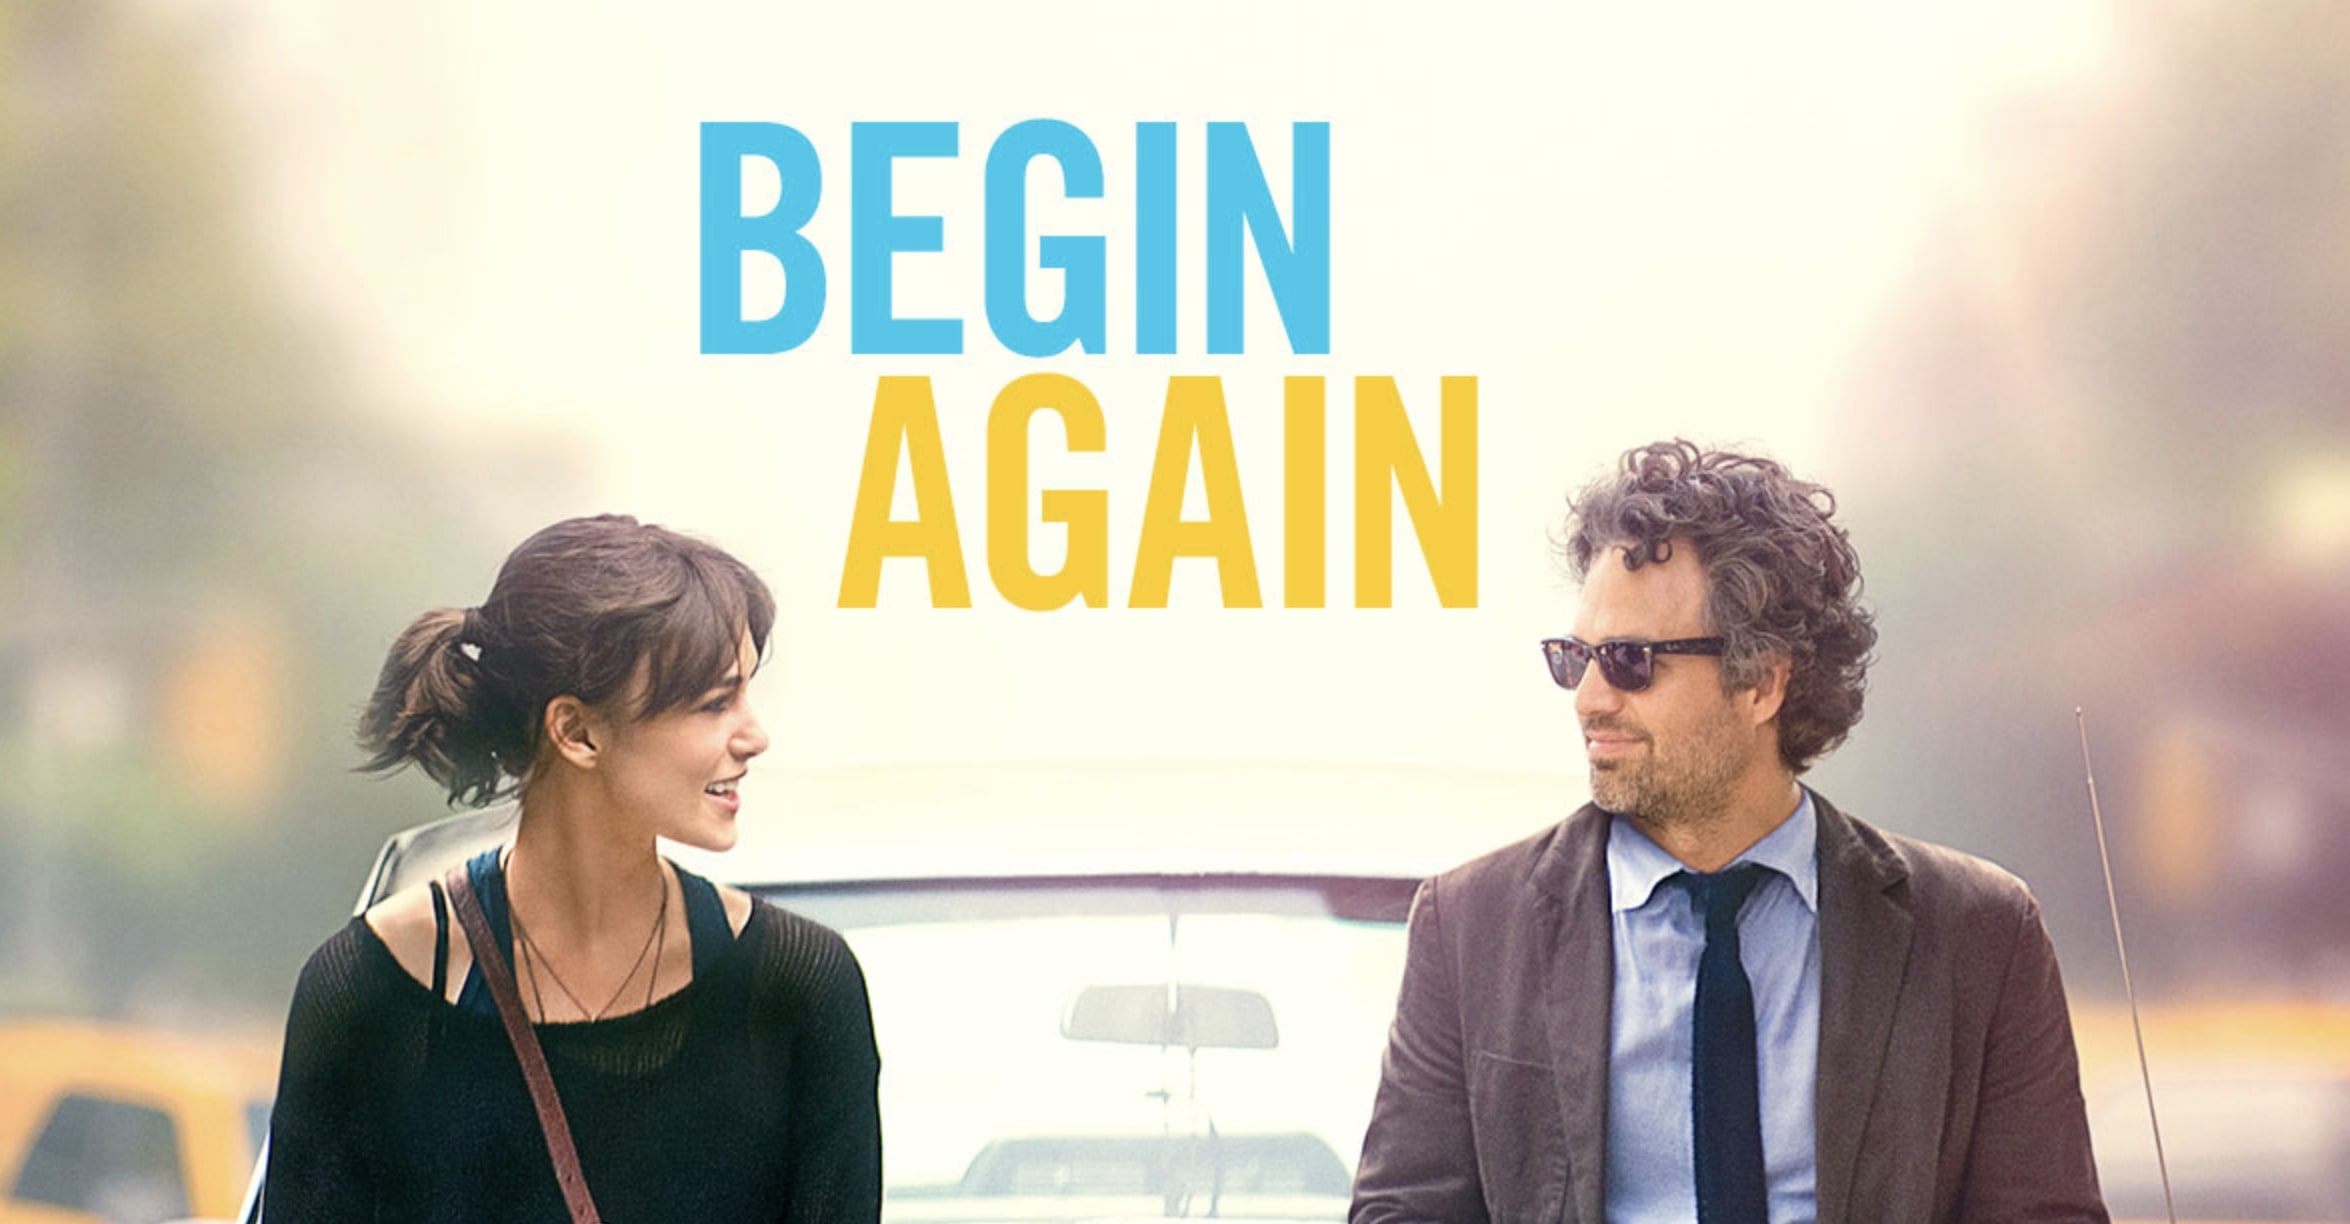 Begin Again (2013) เพราะรัก คือเพลงรัก รีวิวหนังเพลงและดนตรี